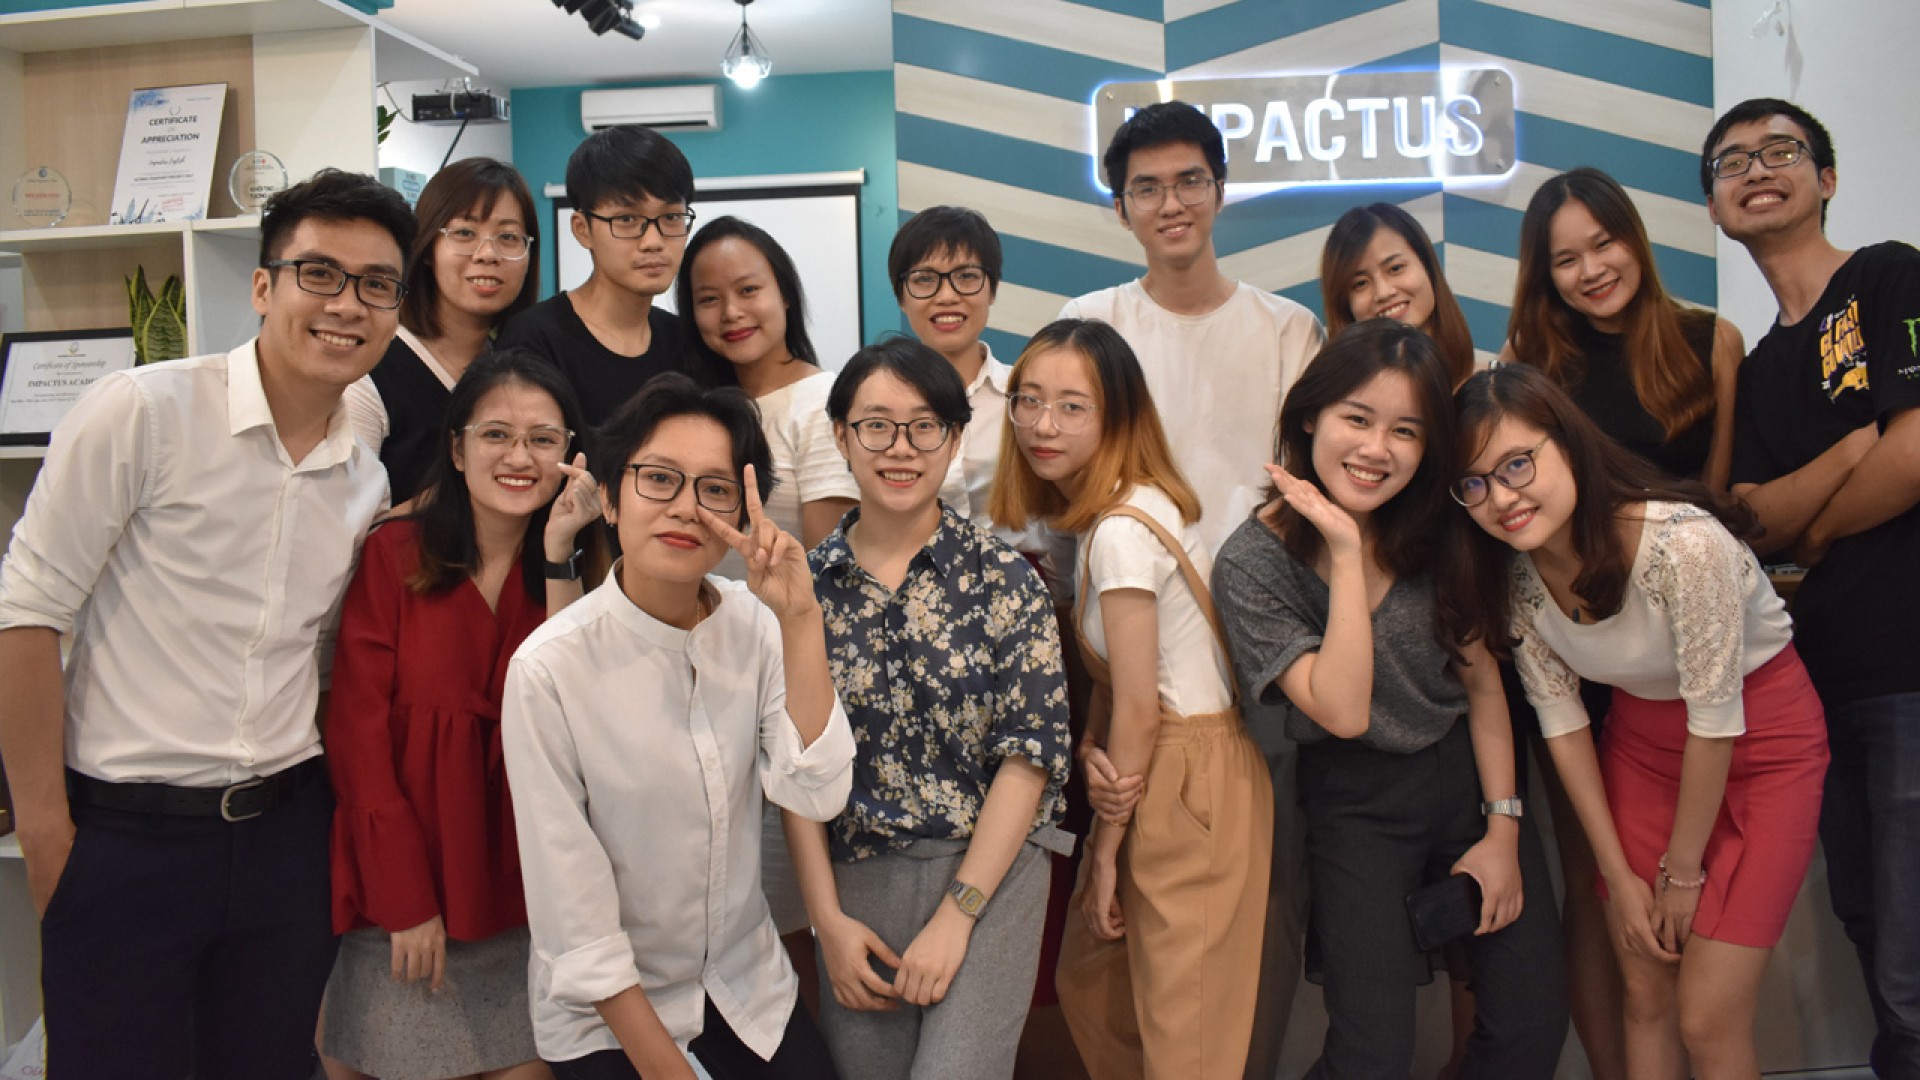 Impactus – Bí kíp bứt tốc sự nghiệp và tăng cơ hội cạnh tranh cho sinh viên